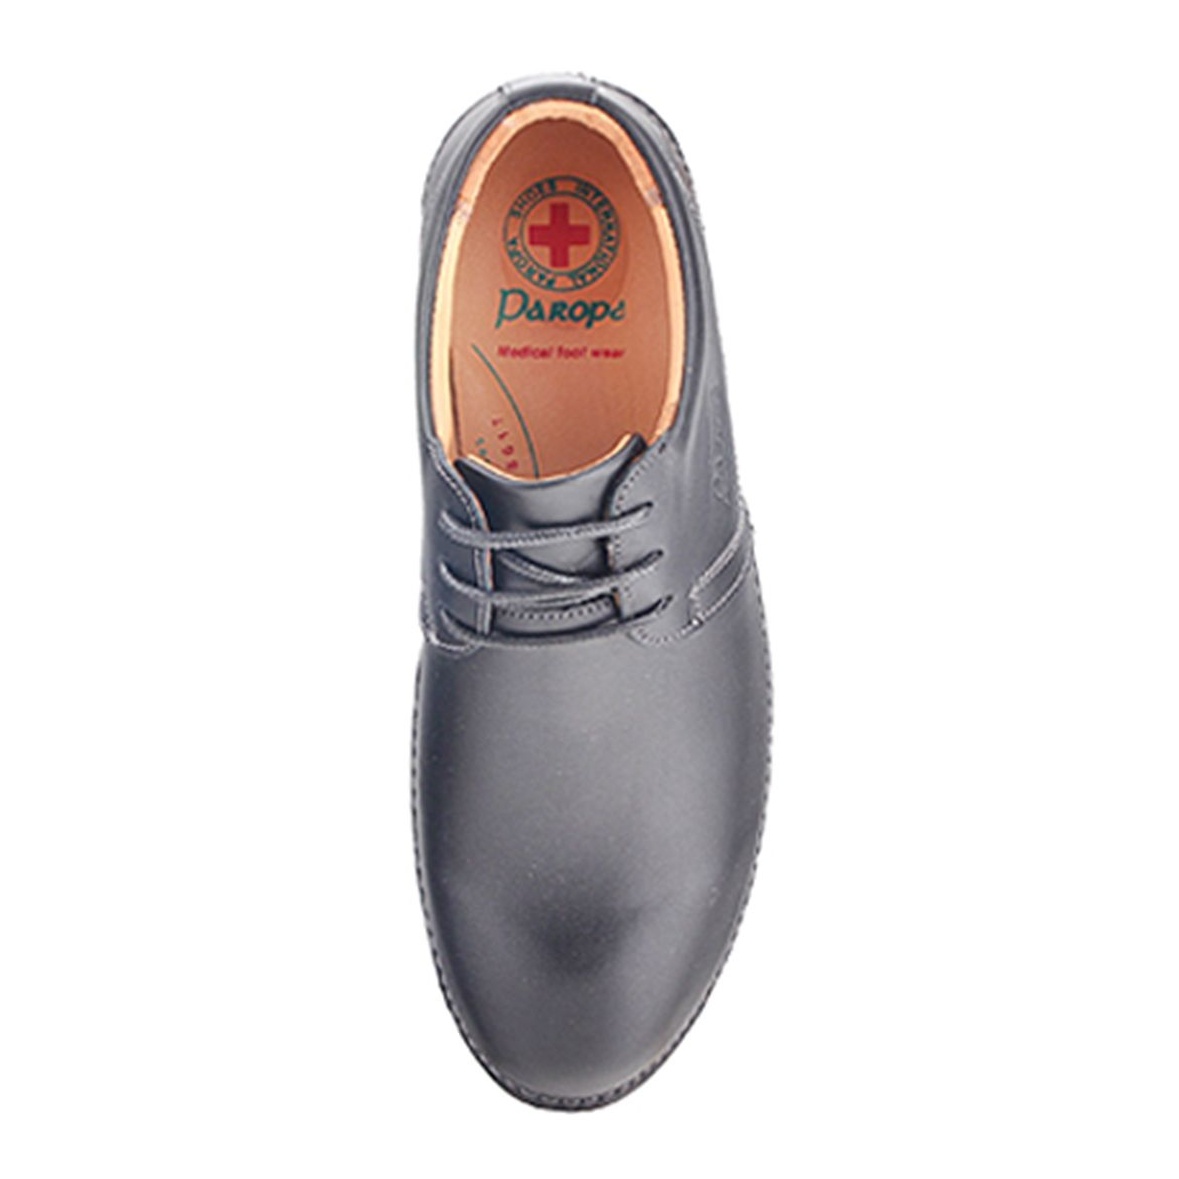 کفش مردانه پاروپا مدل دامون کد 70216501650